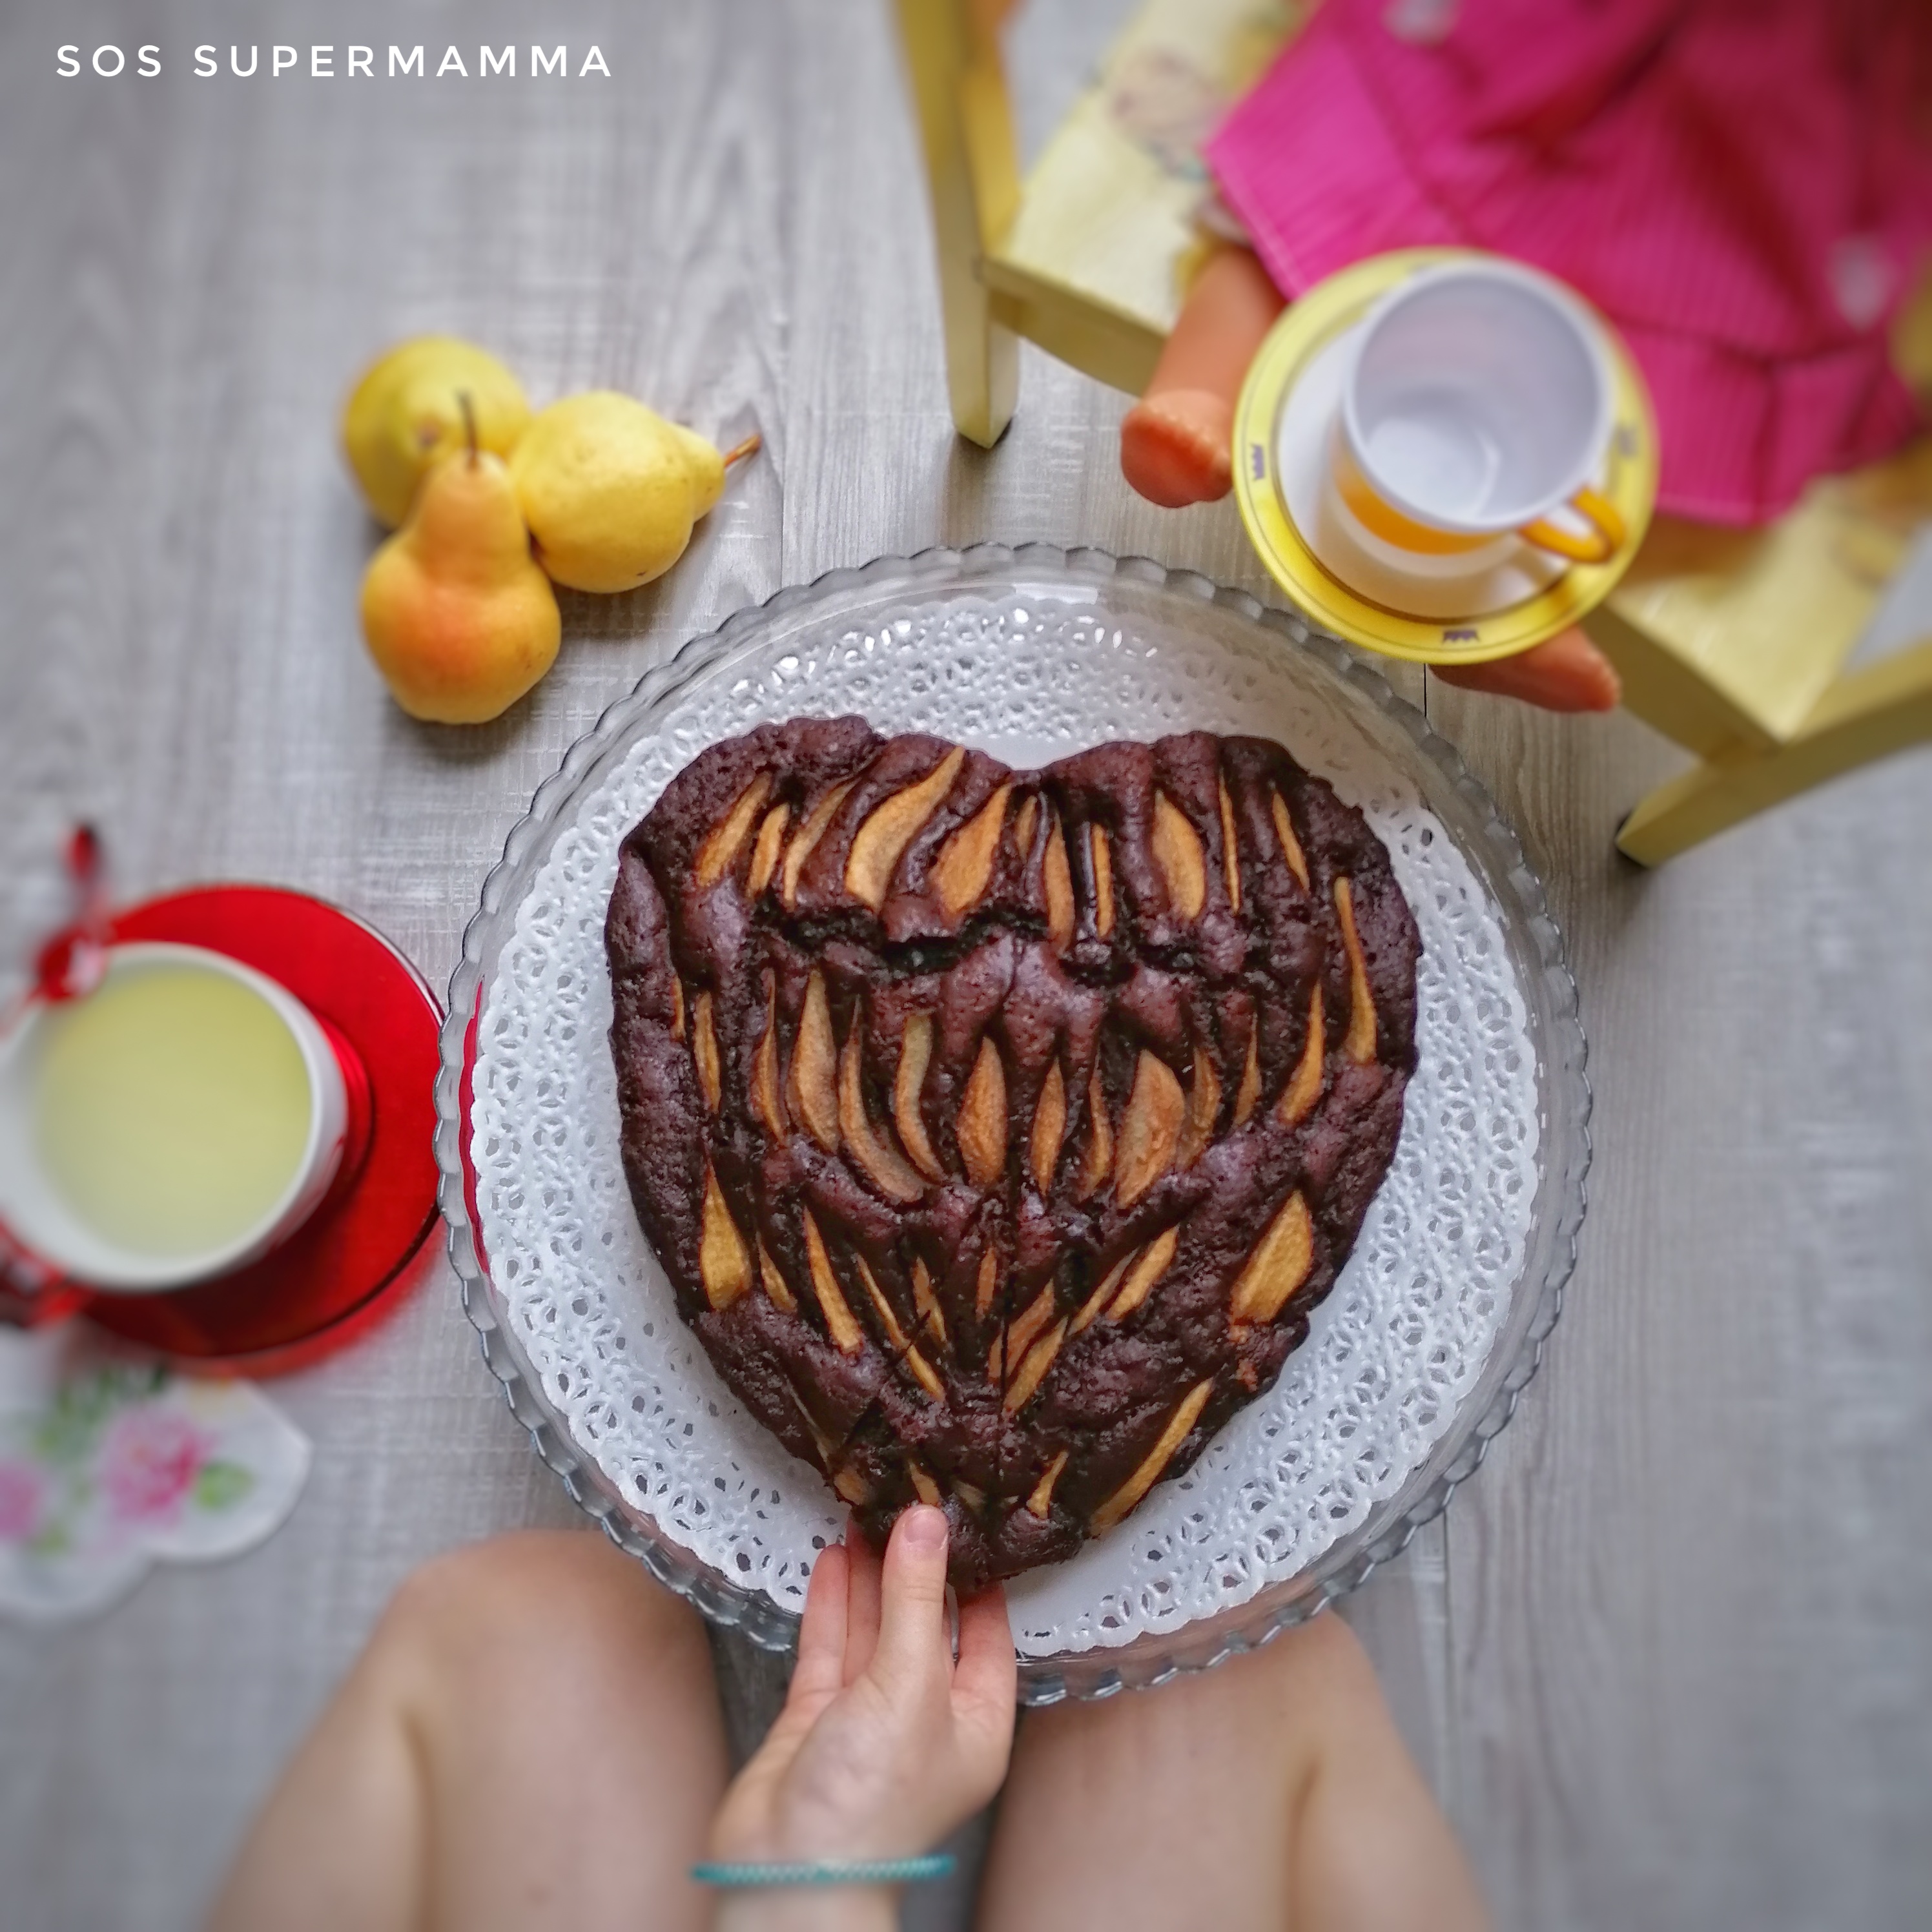 Torta pere e cioccolato - Foto di Sossupermamma -